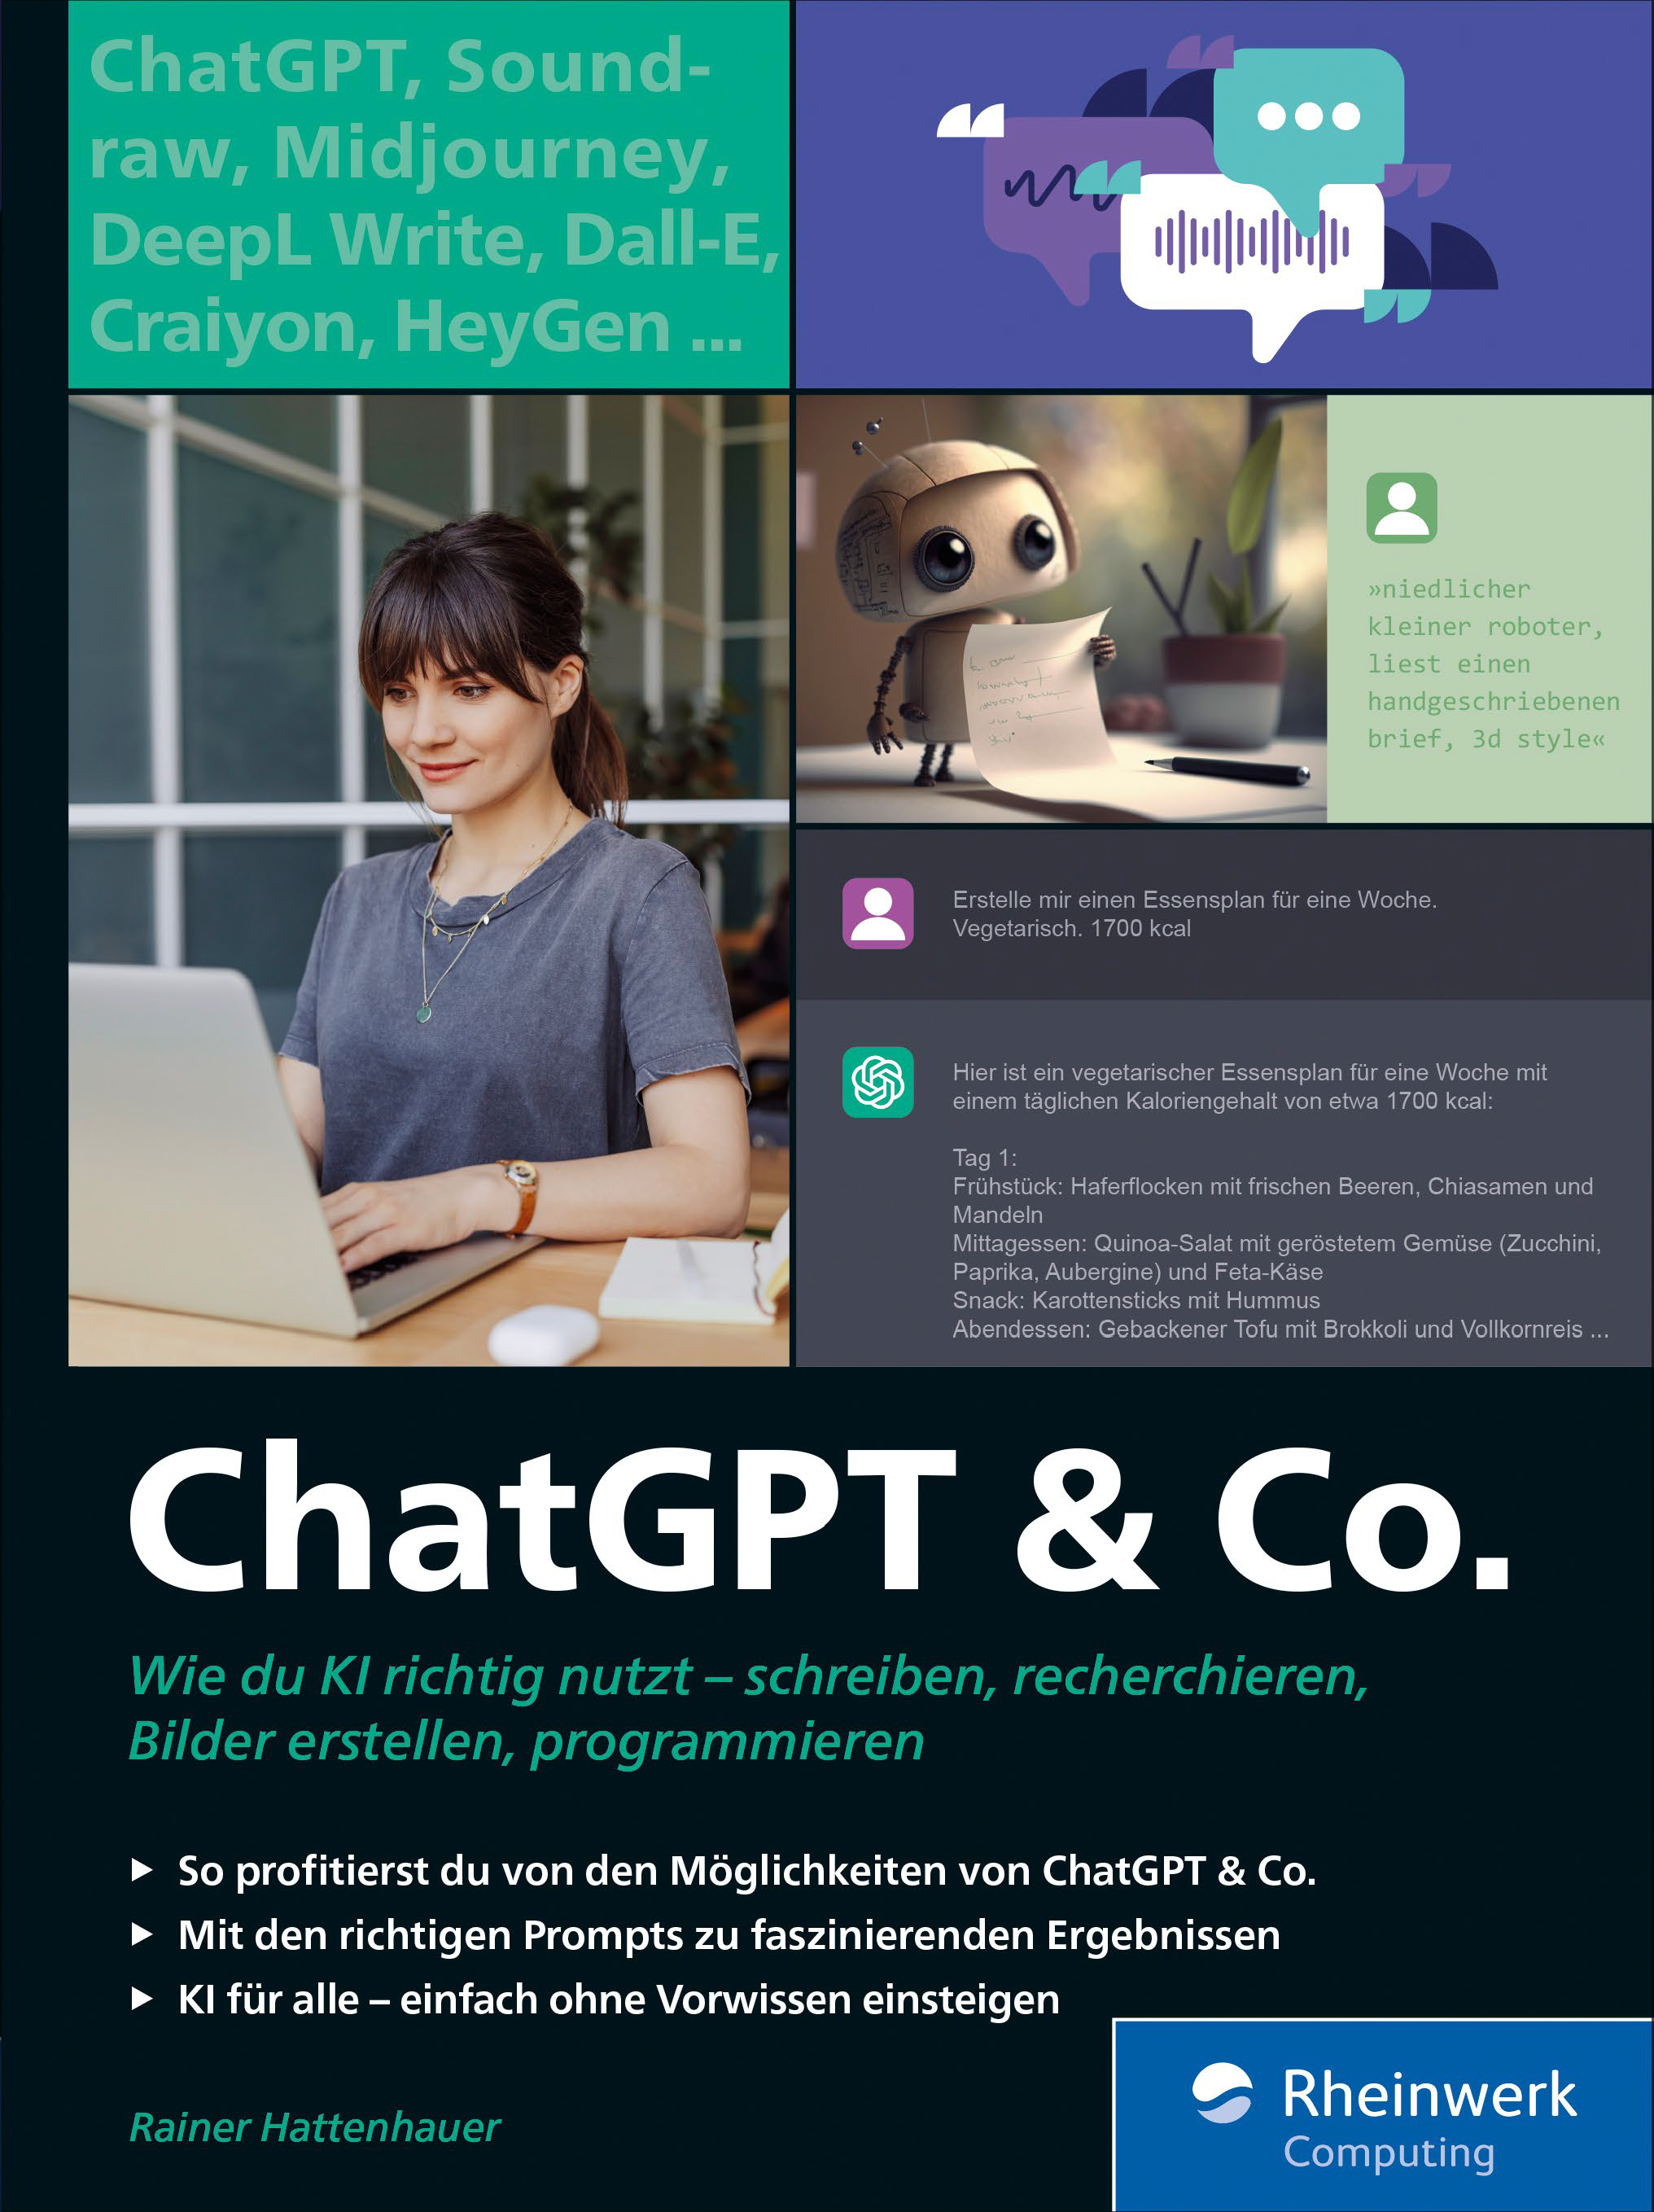 ChatGPT & Co. (Rheinwerk Verlag)